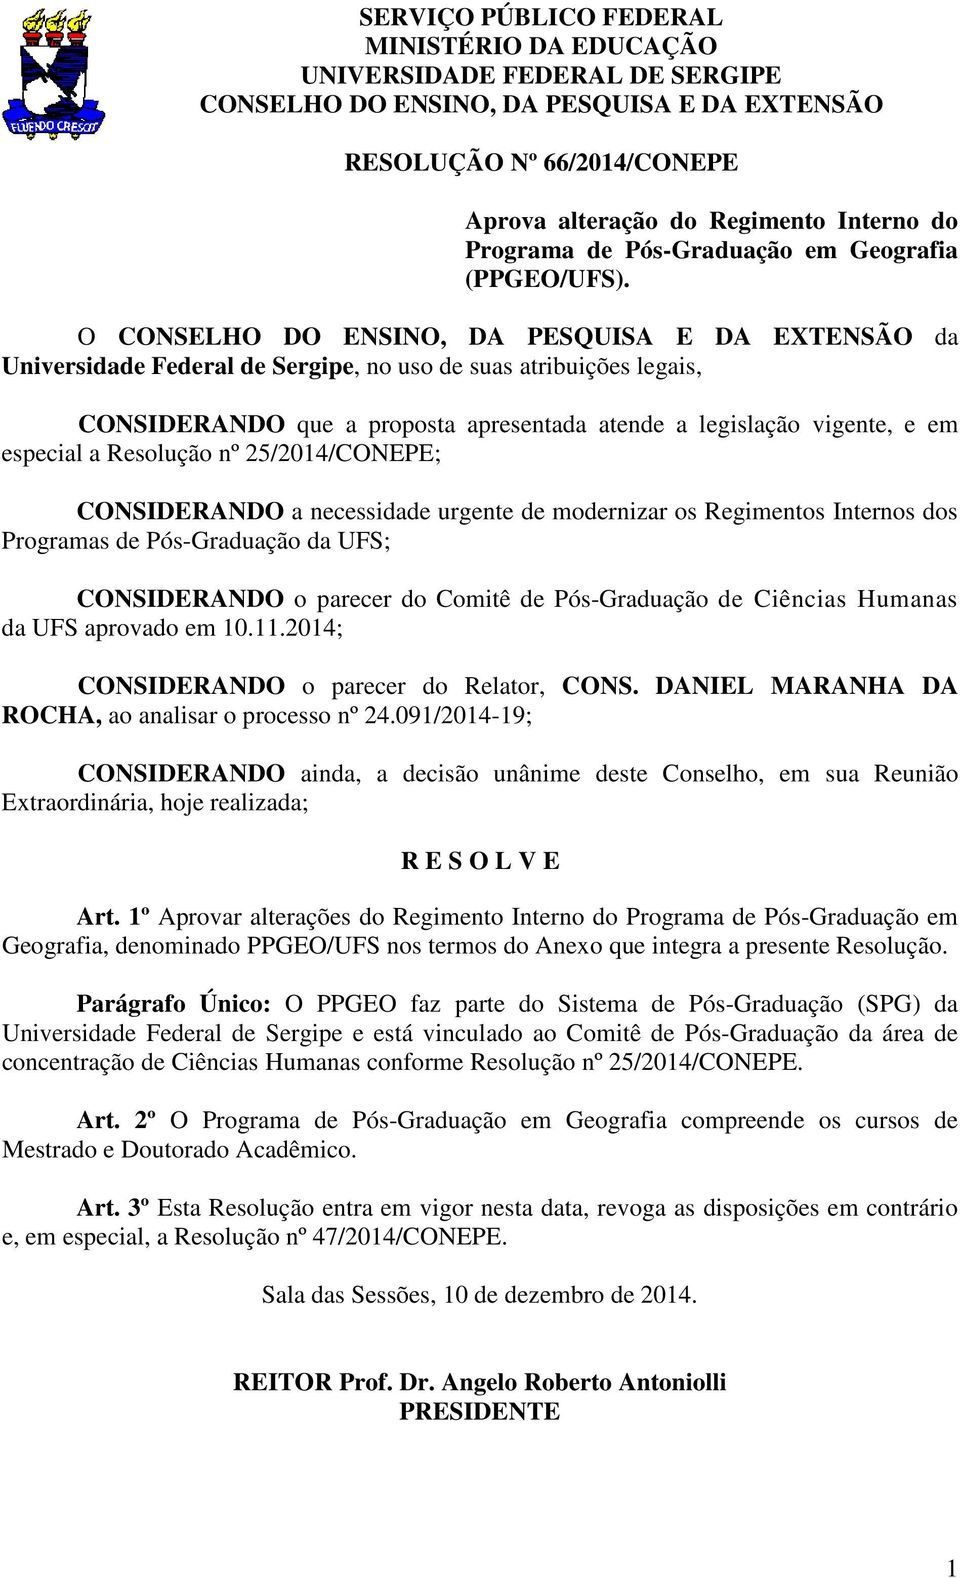 O CONSELHO DO ENSINO, DA PESQUISA E DA EXTENSÃO da Universidade Federal de Sergipe, no uso de suas atribuições legais, CONSIDERANDO que a proposta apresentada atende a legislação vigente, e em